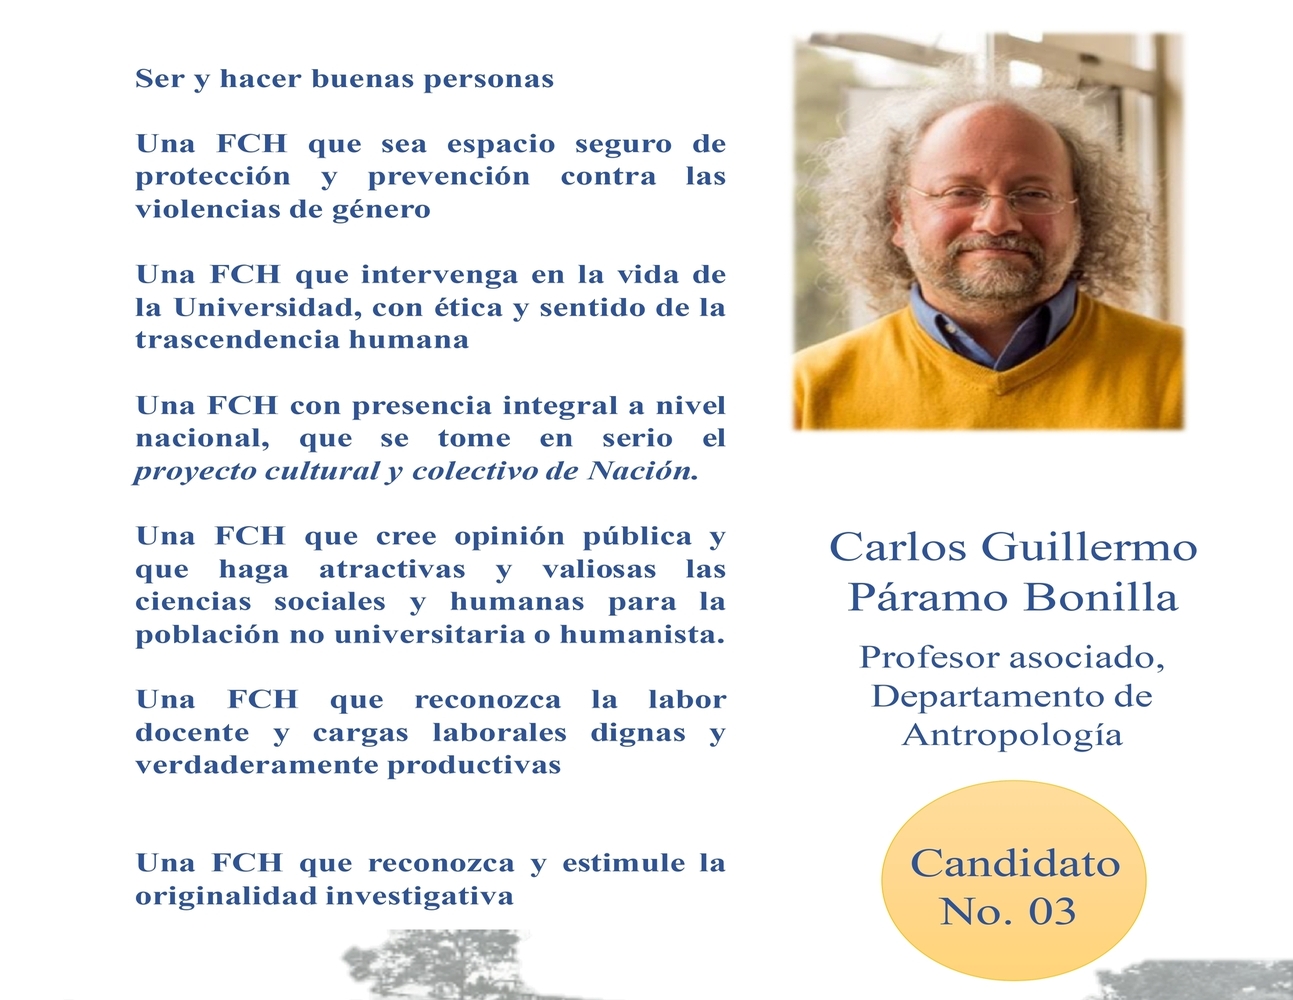 #3 Carlos Guillermo Páramo Bonilla